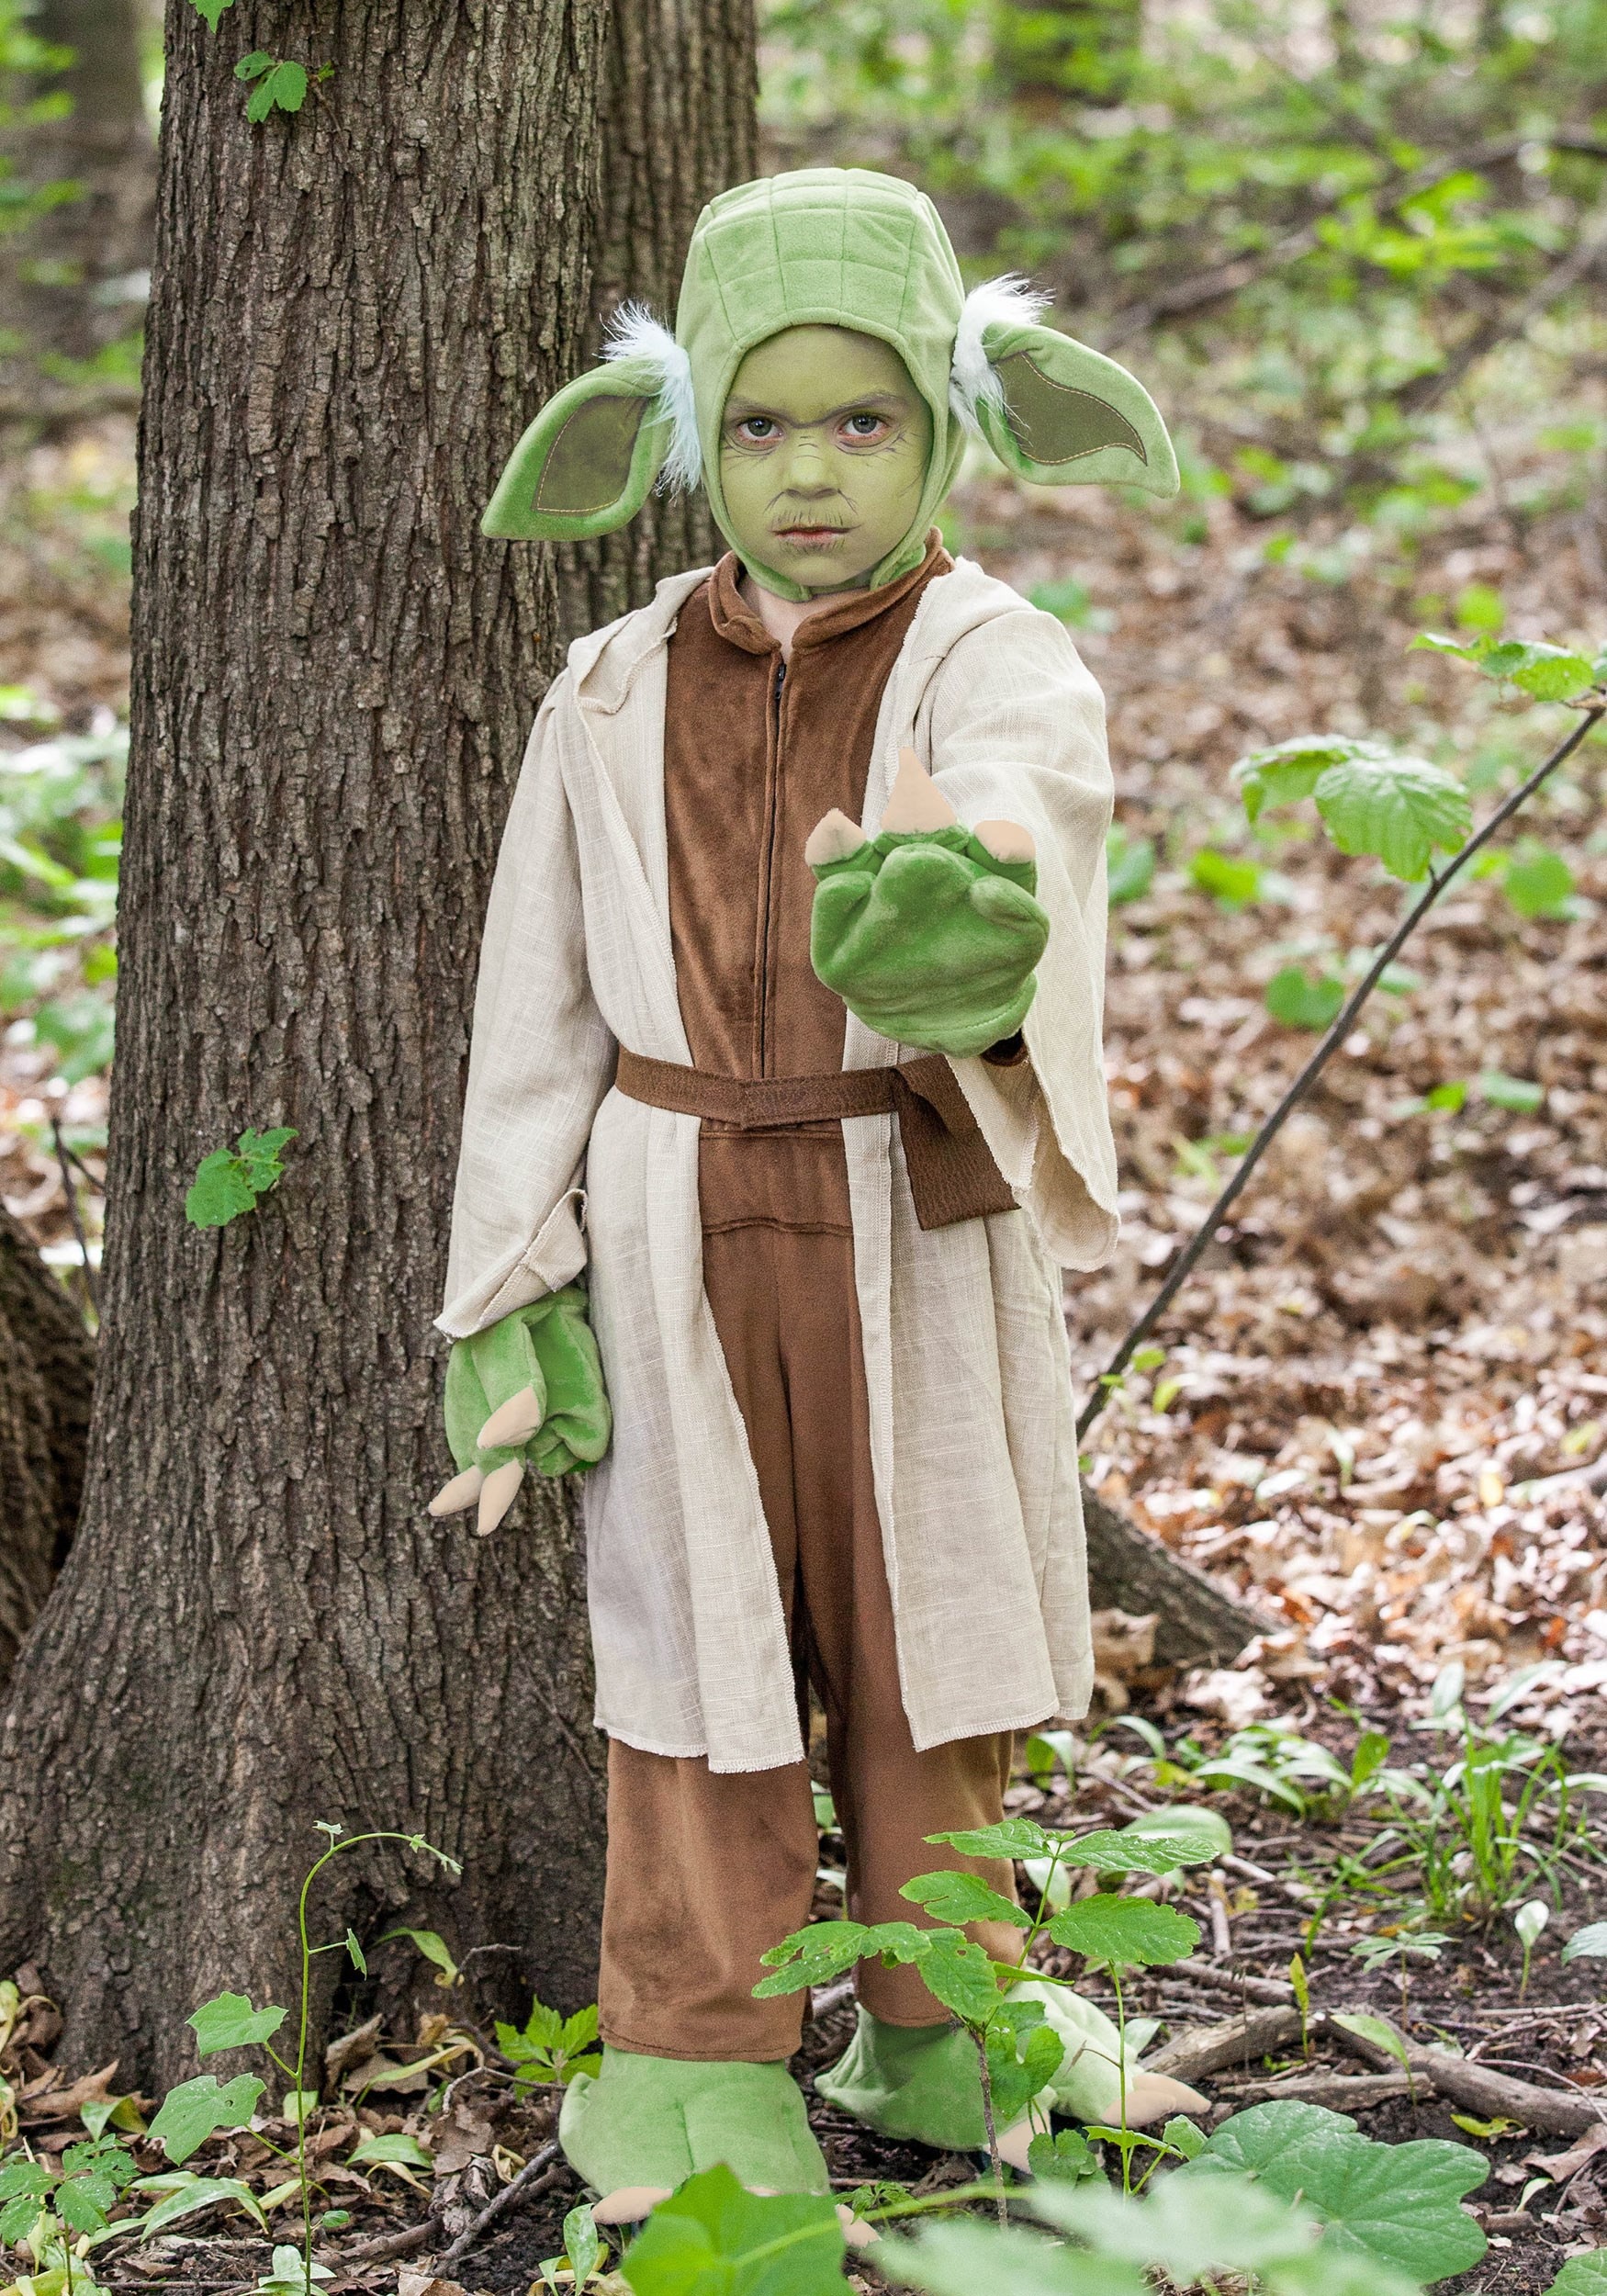 Star Wars Yoda disfraz para niños Multicolor Colombia